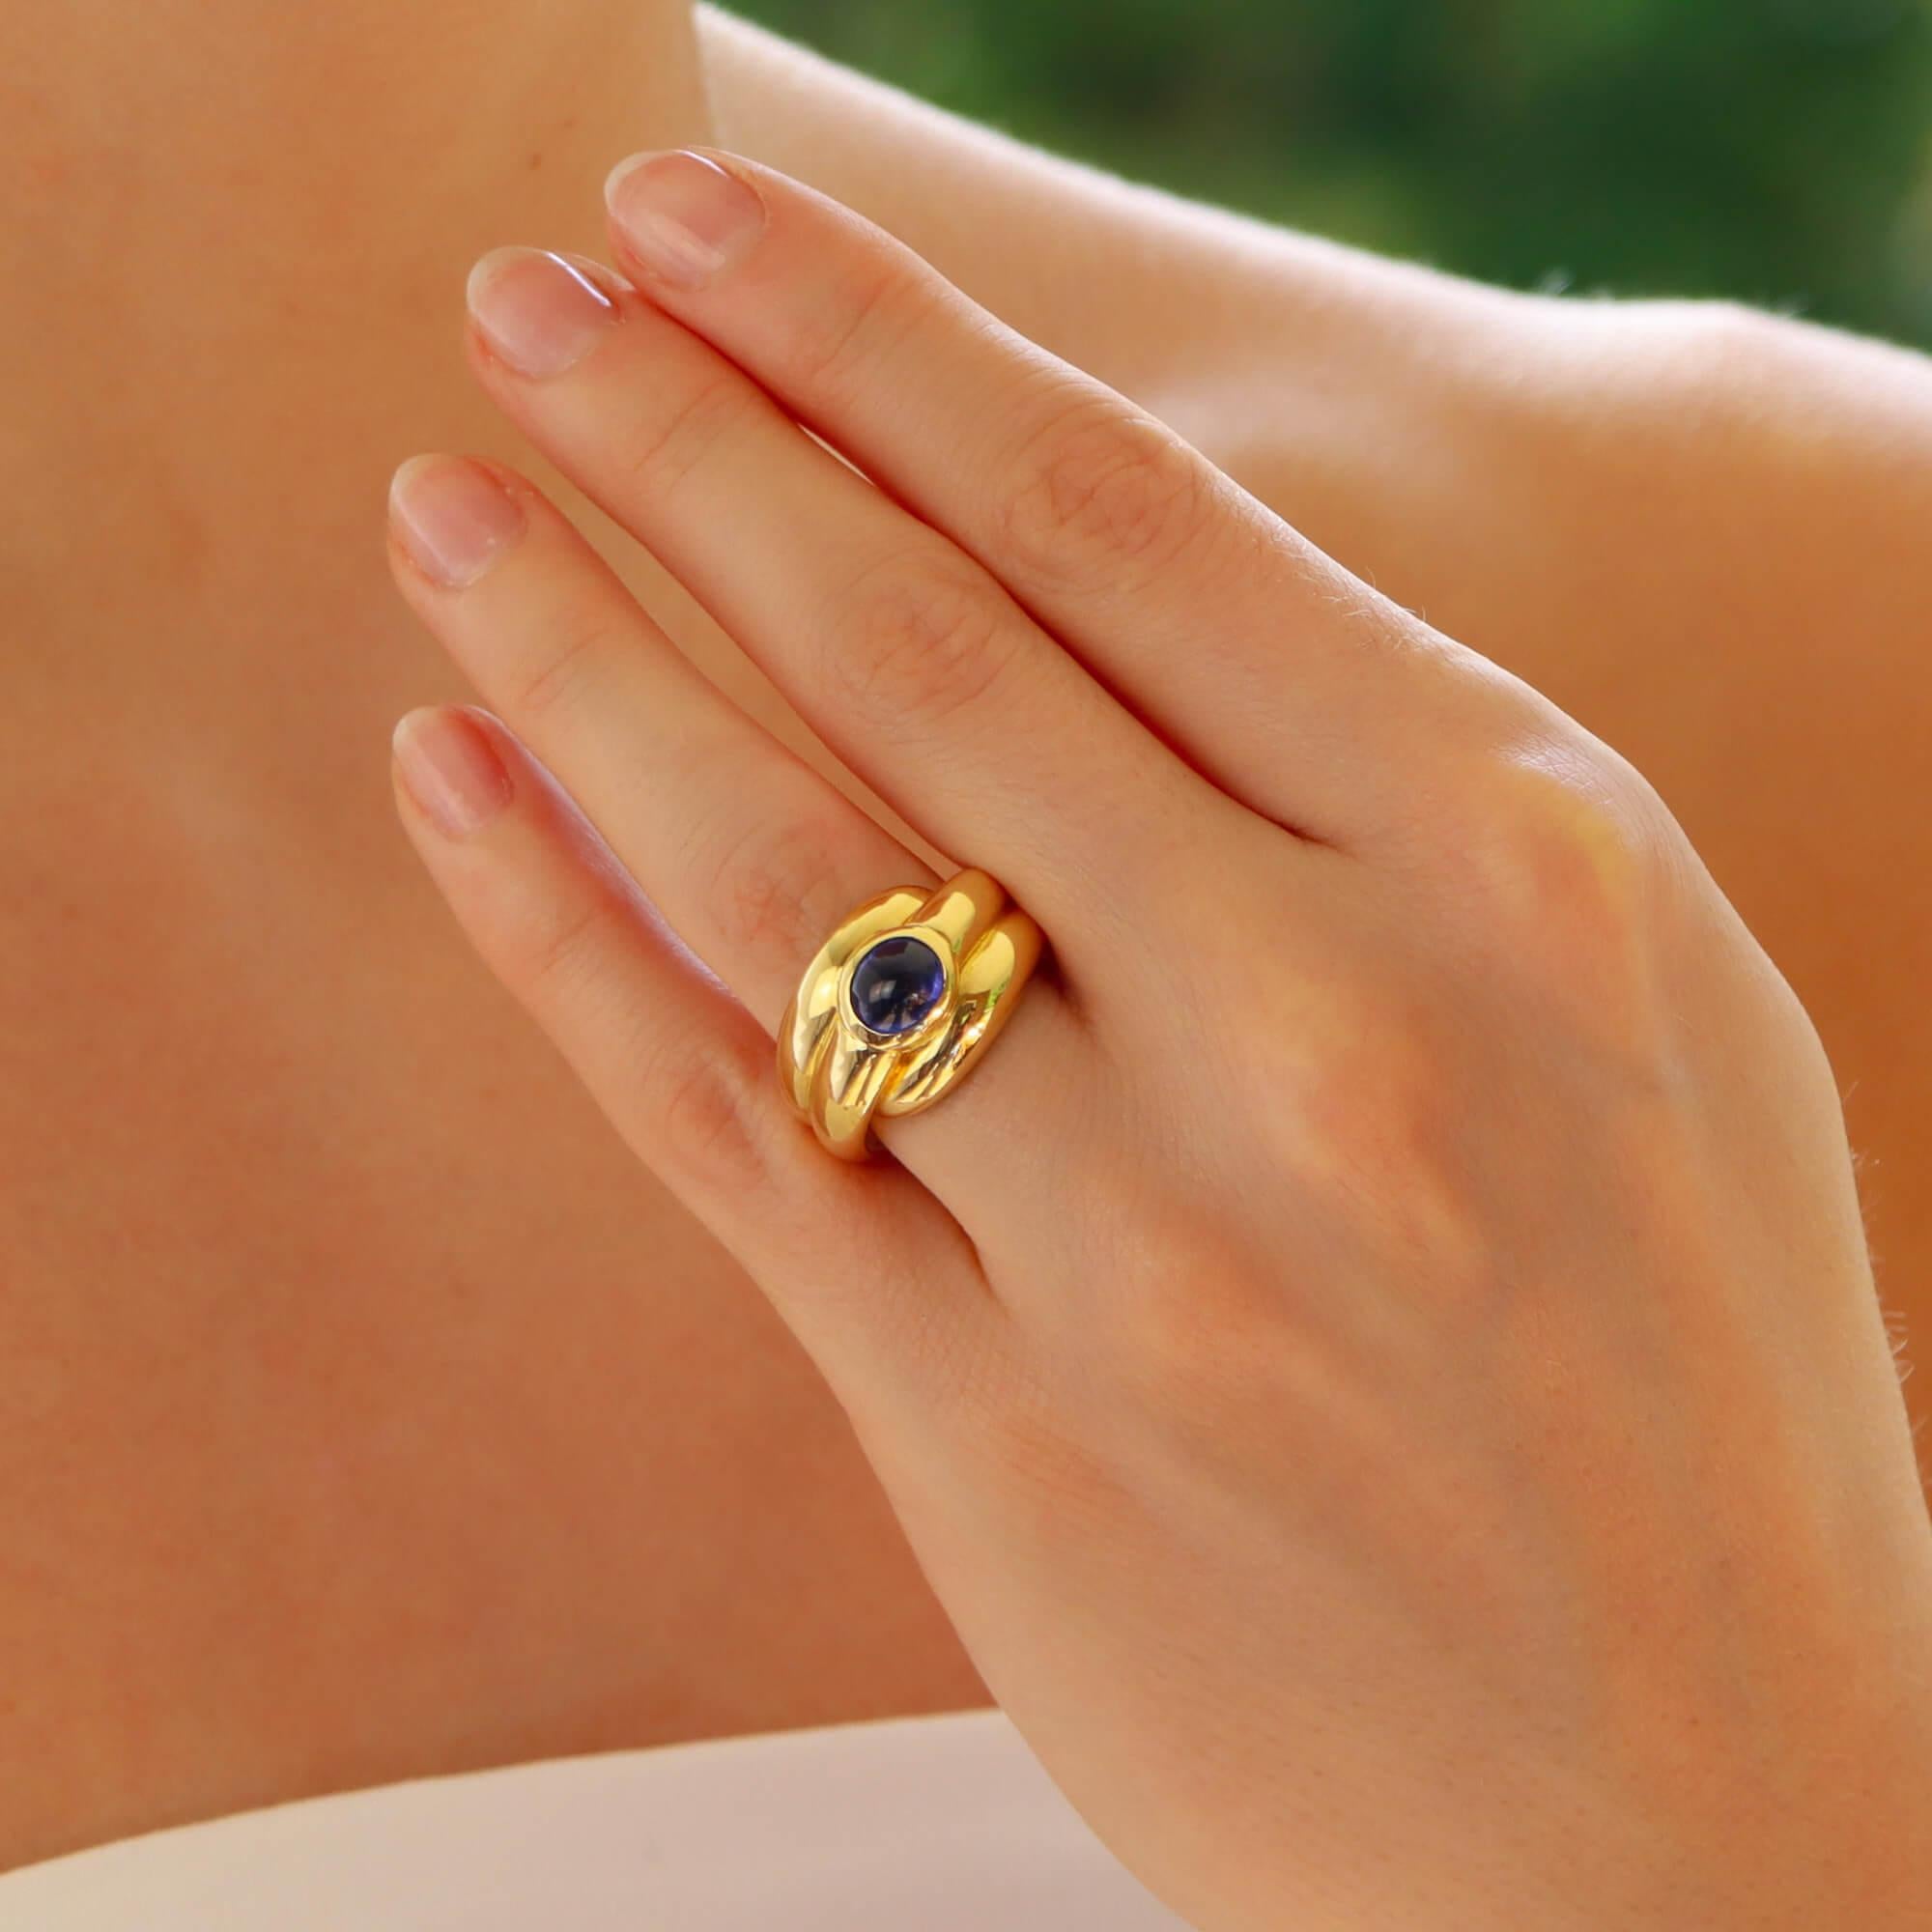 Ein schöner französischer Vintage-Saphir-Bombé-Ring in 18 Karat Gelbgold.

Der Ring ist in einem erhabenen, geriffelten Bombé-Design gestaltet und ist in der Mitte mit einem ovalen Cabochon-Saphir besetzt.

Durch das Design hebt sich dieses Stück am